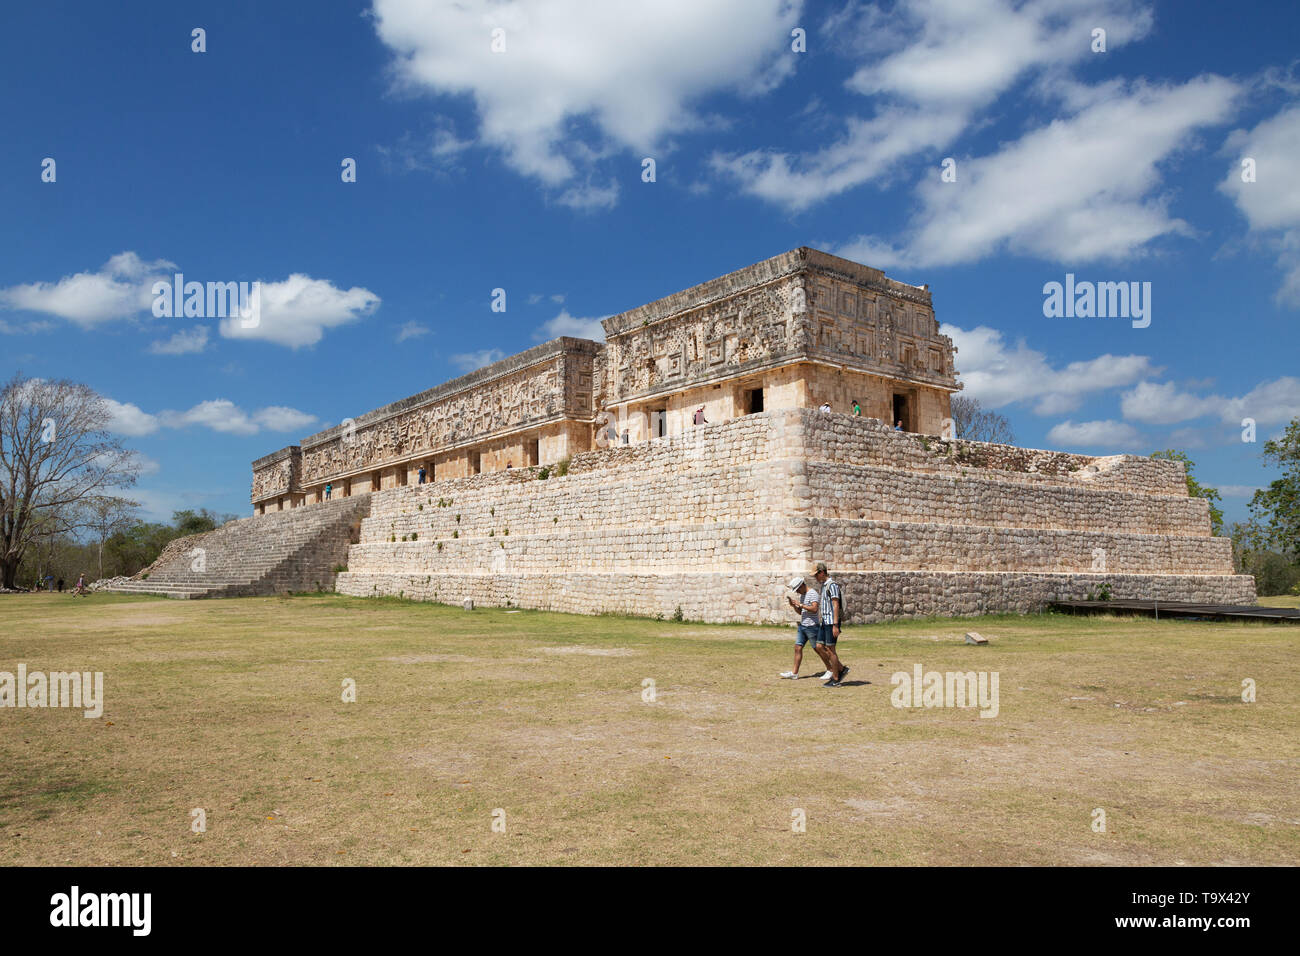 Uxmal Messico - rovine Maya - il Palazzo dei governatori che mostra lo stile Puuc architettura; Uxmal sito patrimonio mondiale dell'UNESCO, Yucatan Messico America Latina Foto Stock